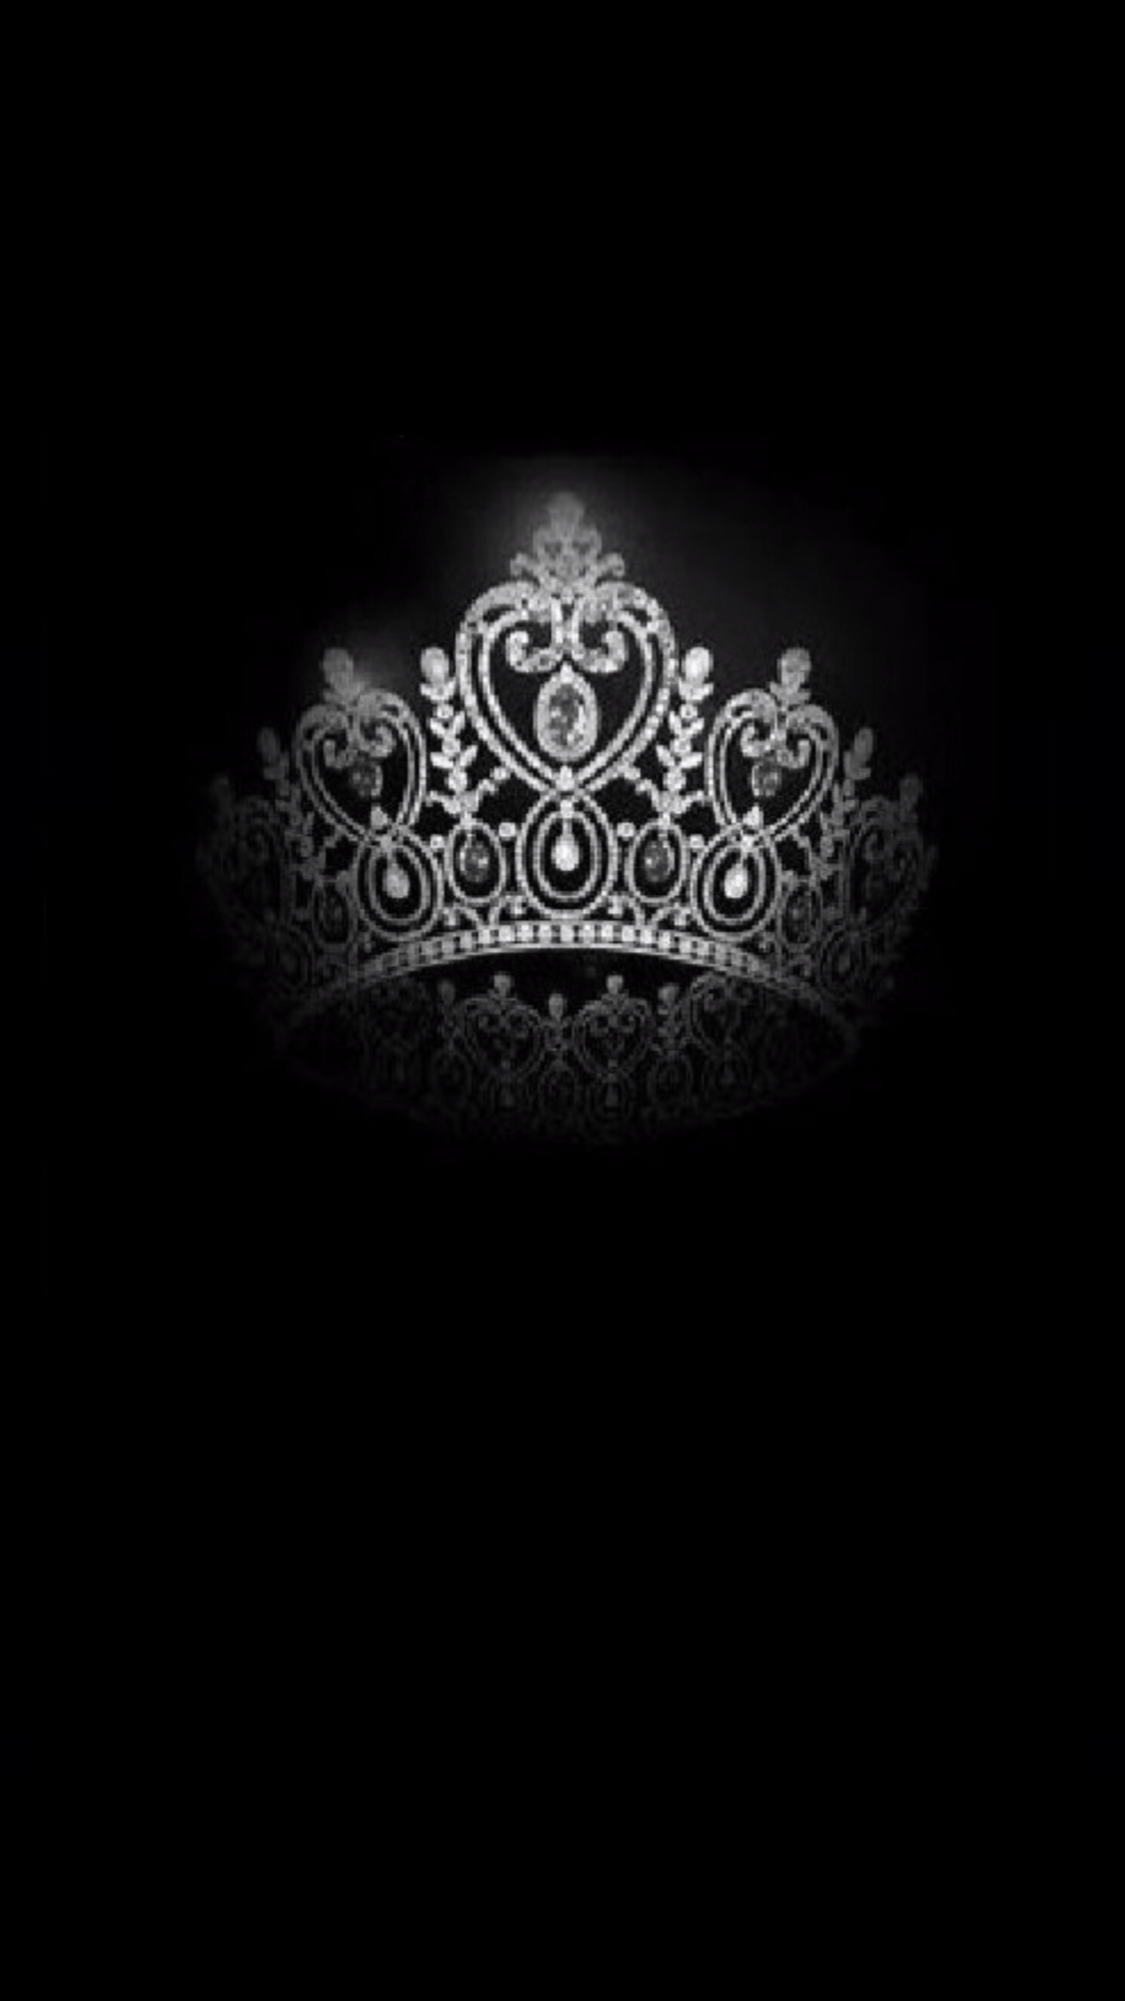 Black Queen Crown Wallpapers Top Free Black Queen Crown Backgrounds Wallpaperaccess